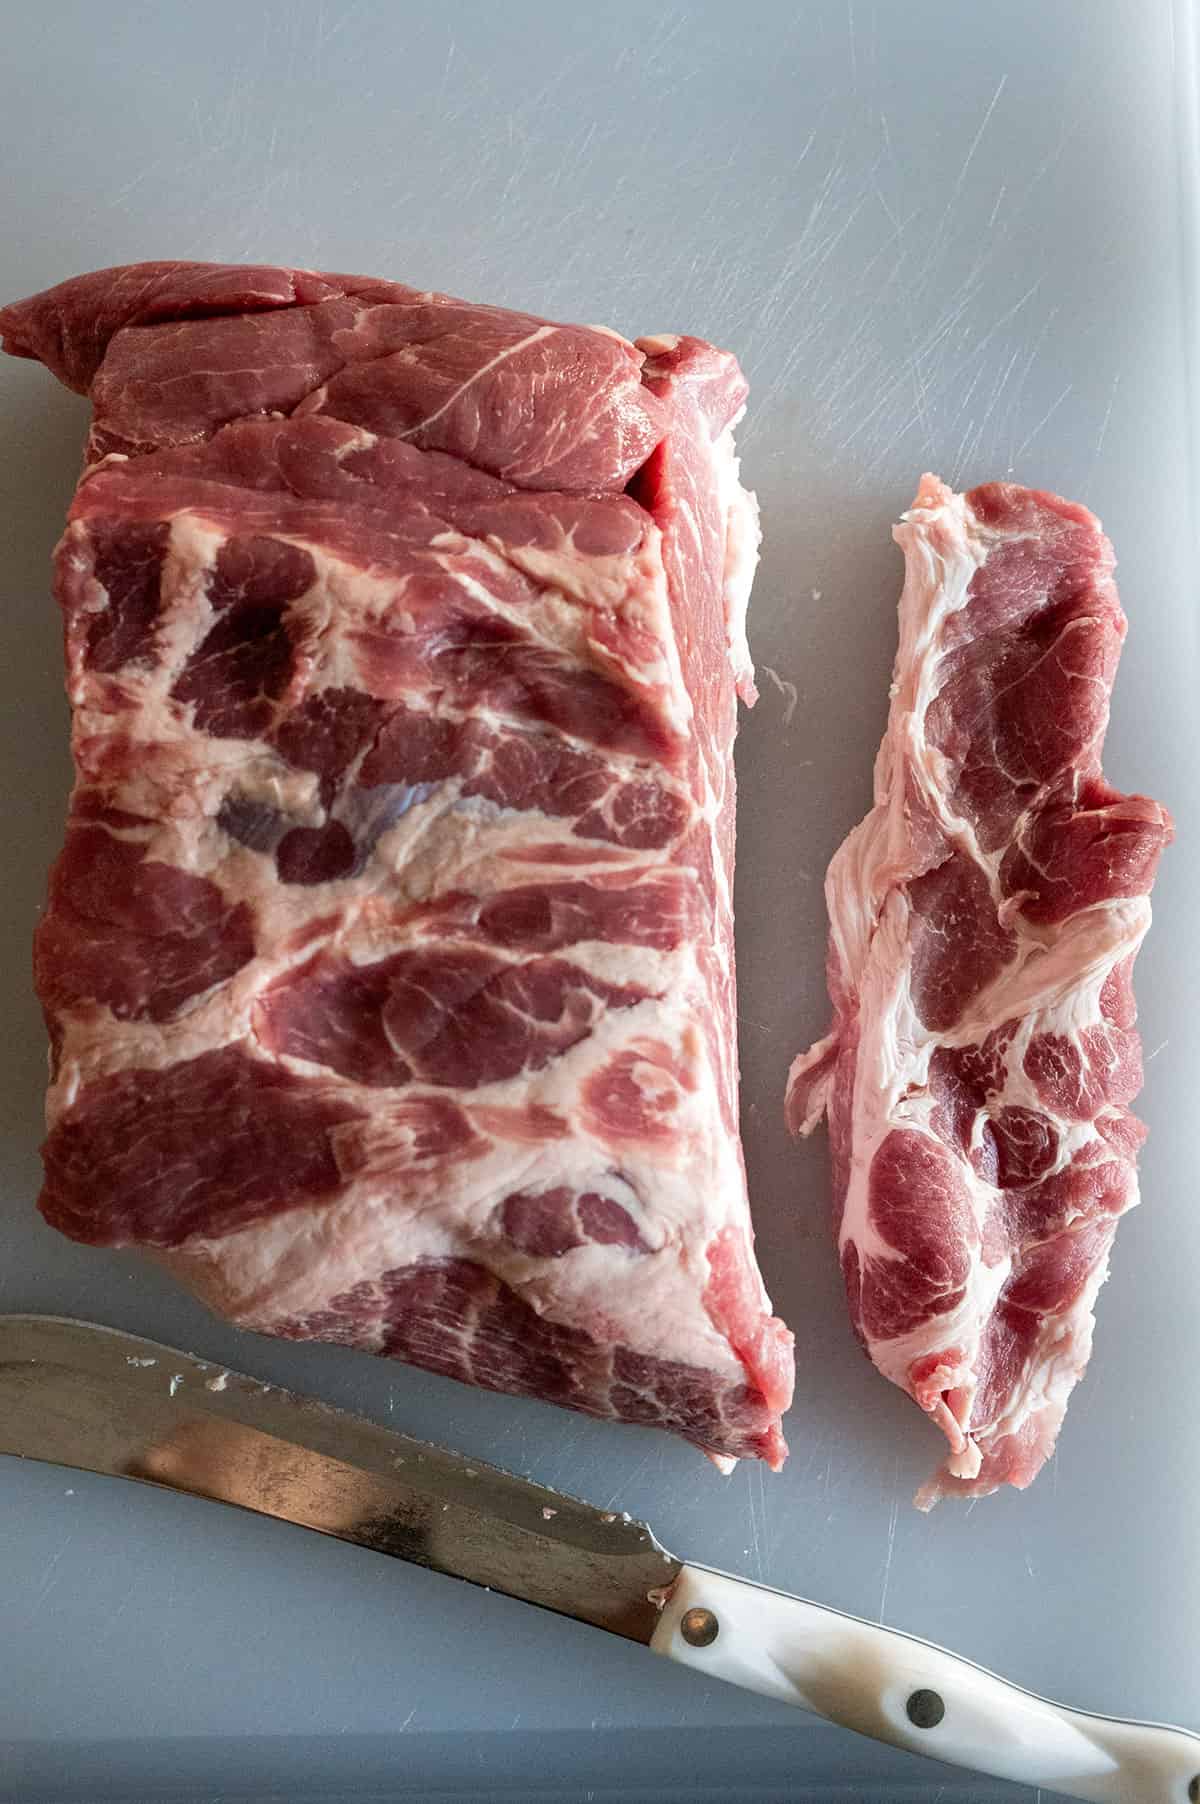 Pork steaks sliced from pork shoulder.